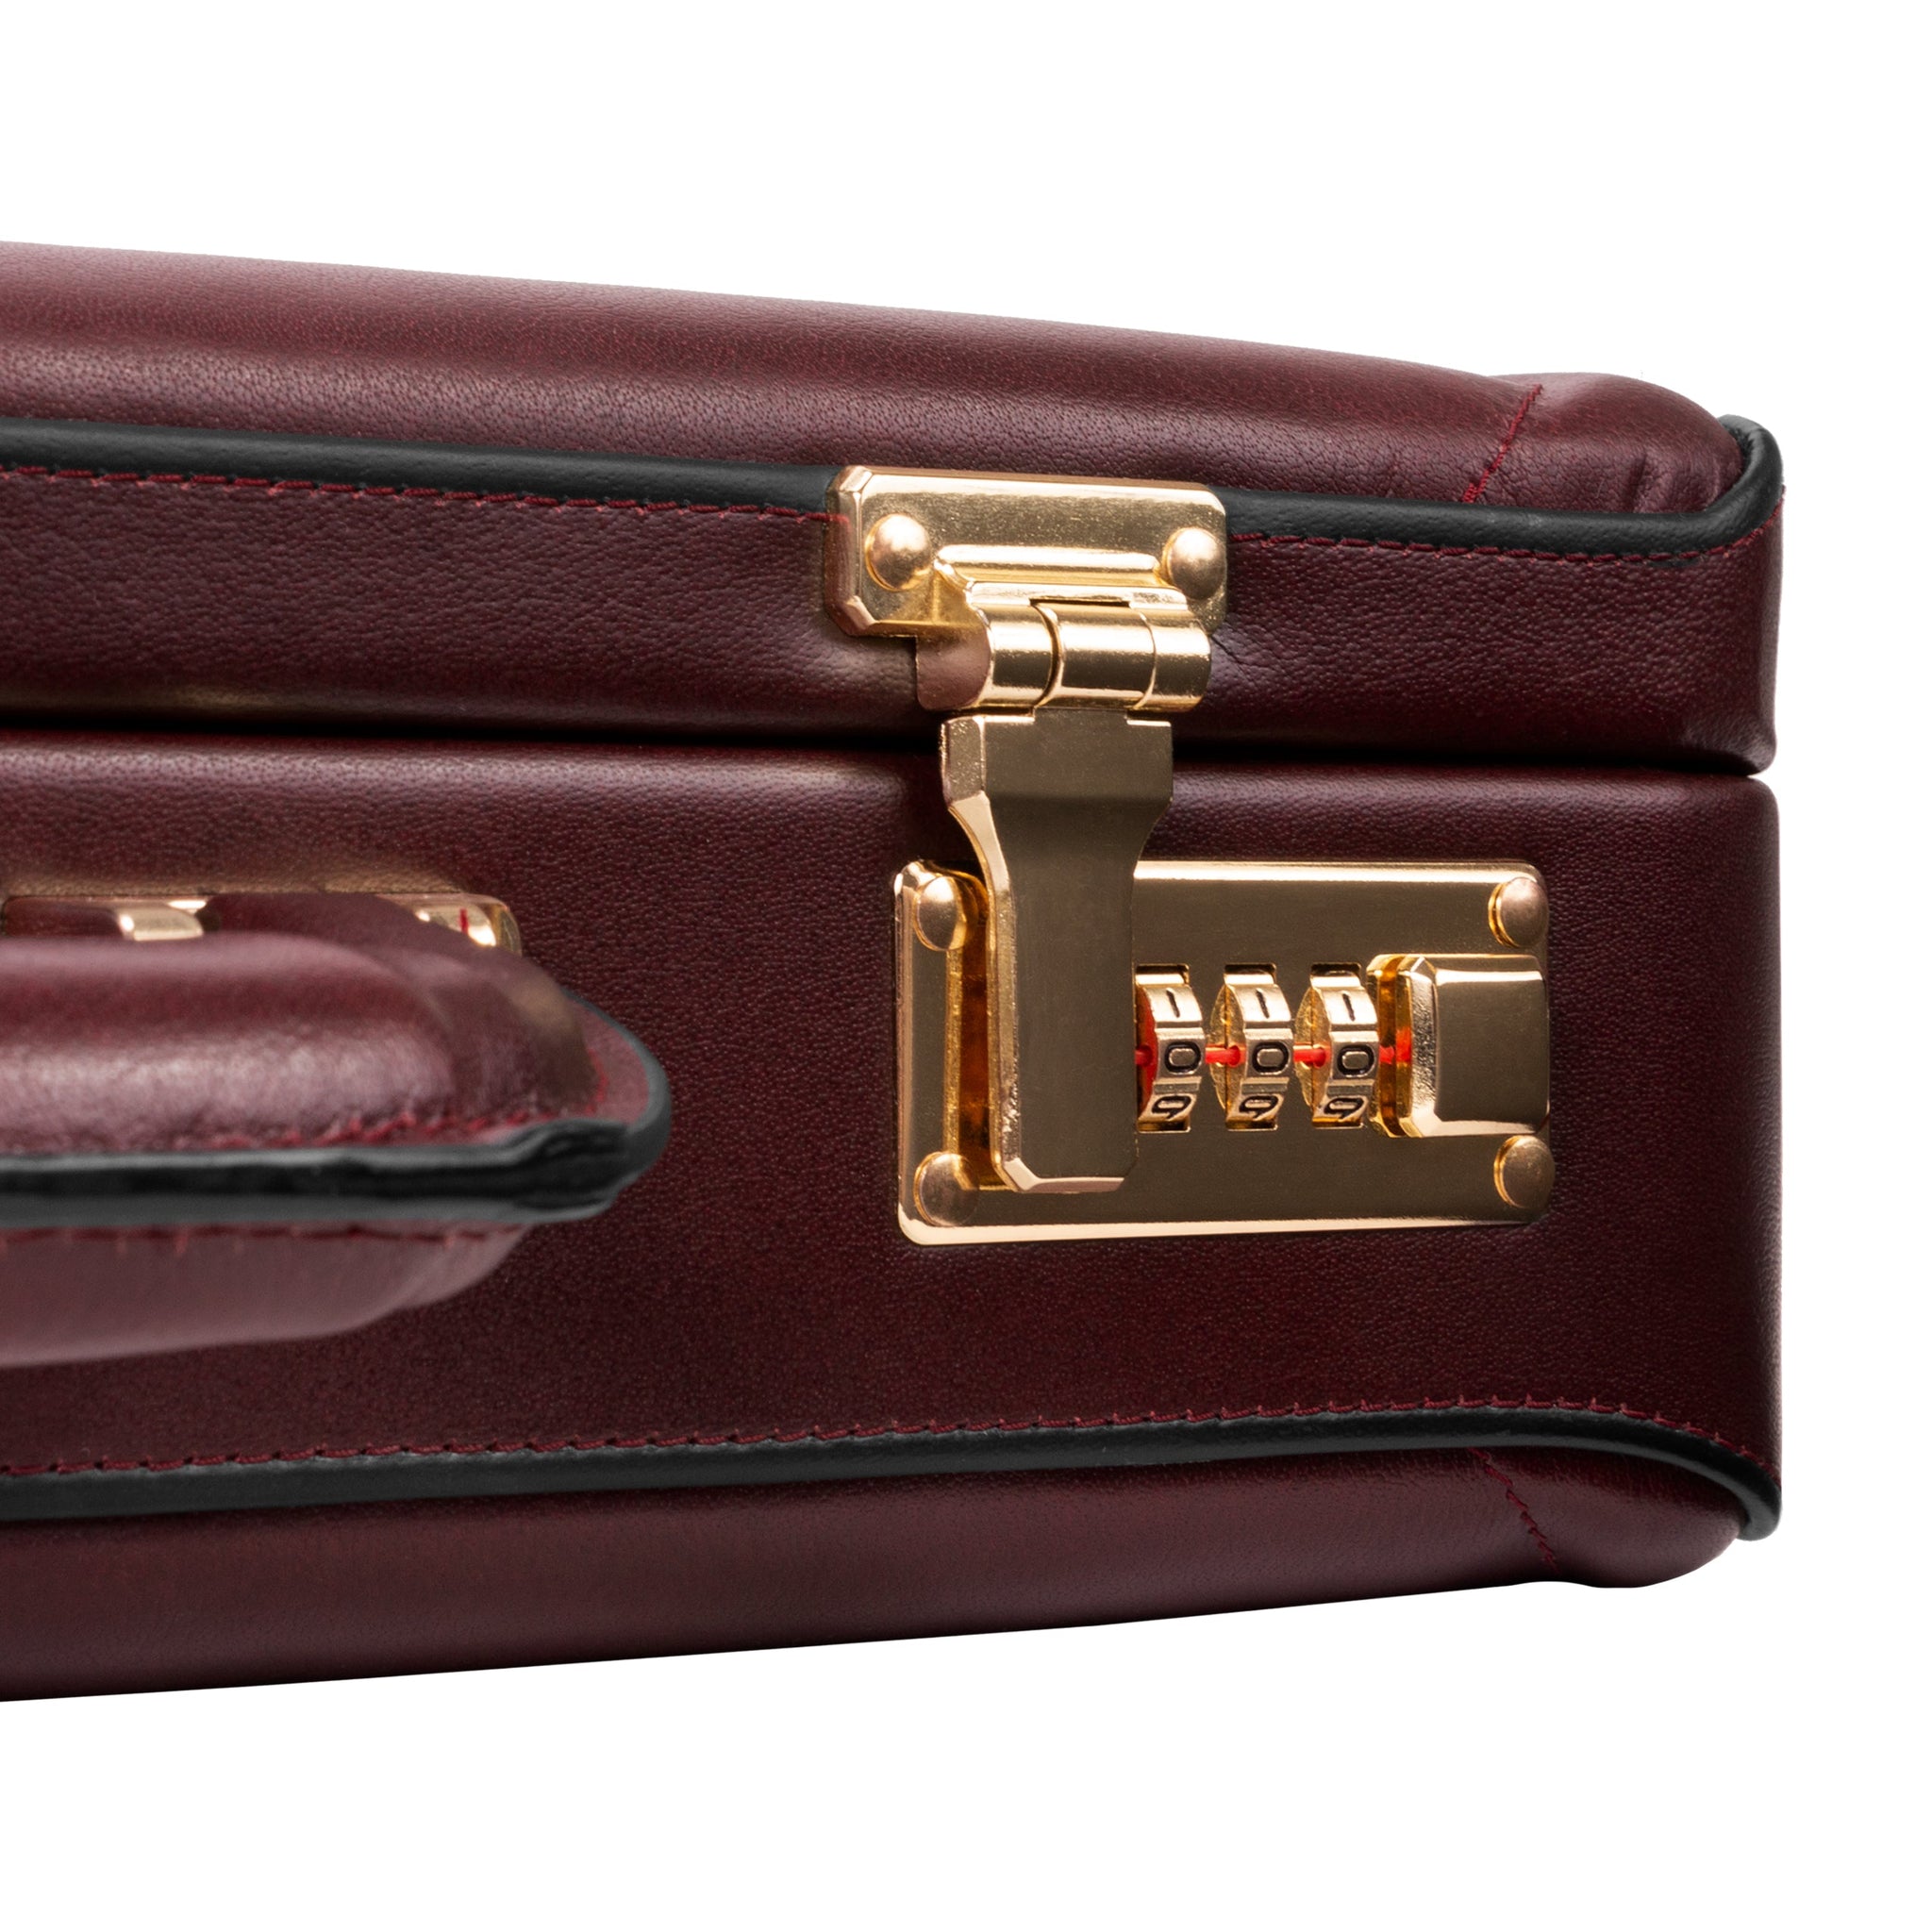 McKlein LAWSON Leather 3.5" Attaché Briefcase